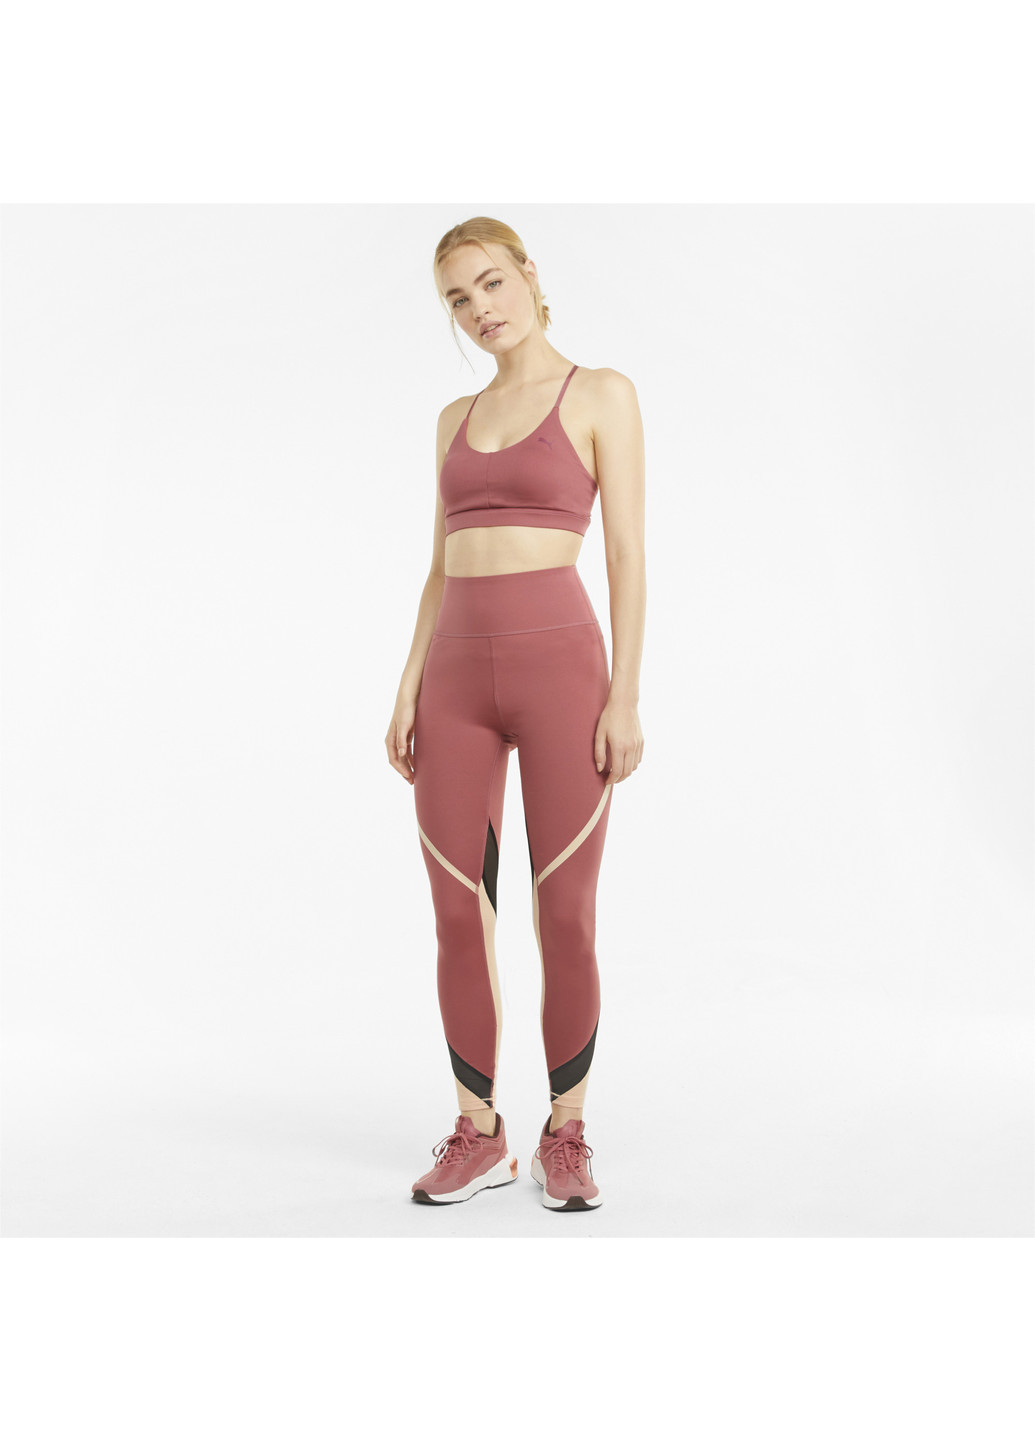 Розовые демисезонные легинсы eversculpt full-length q4 women's training leggings Puma